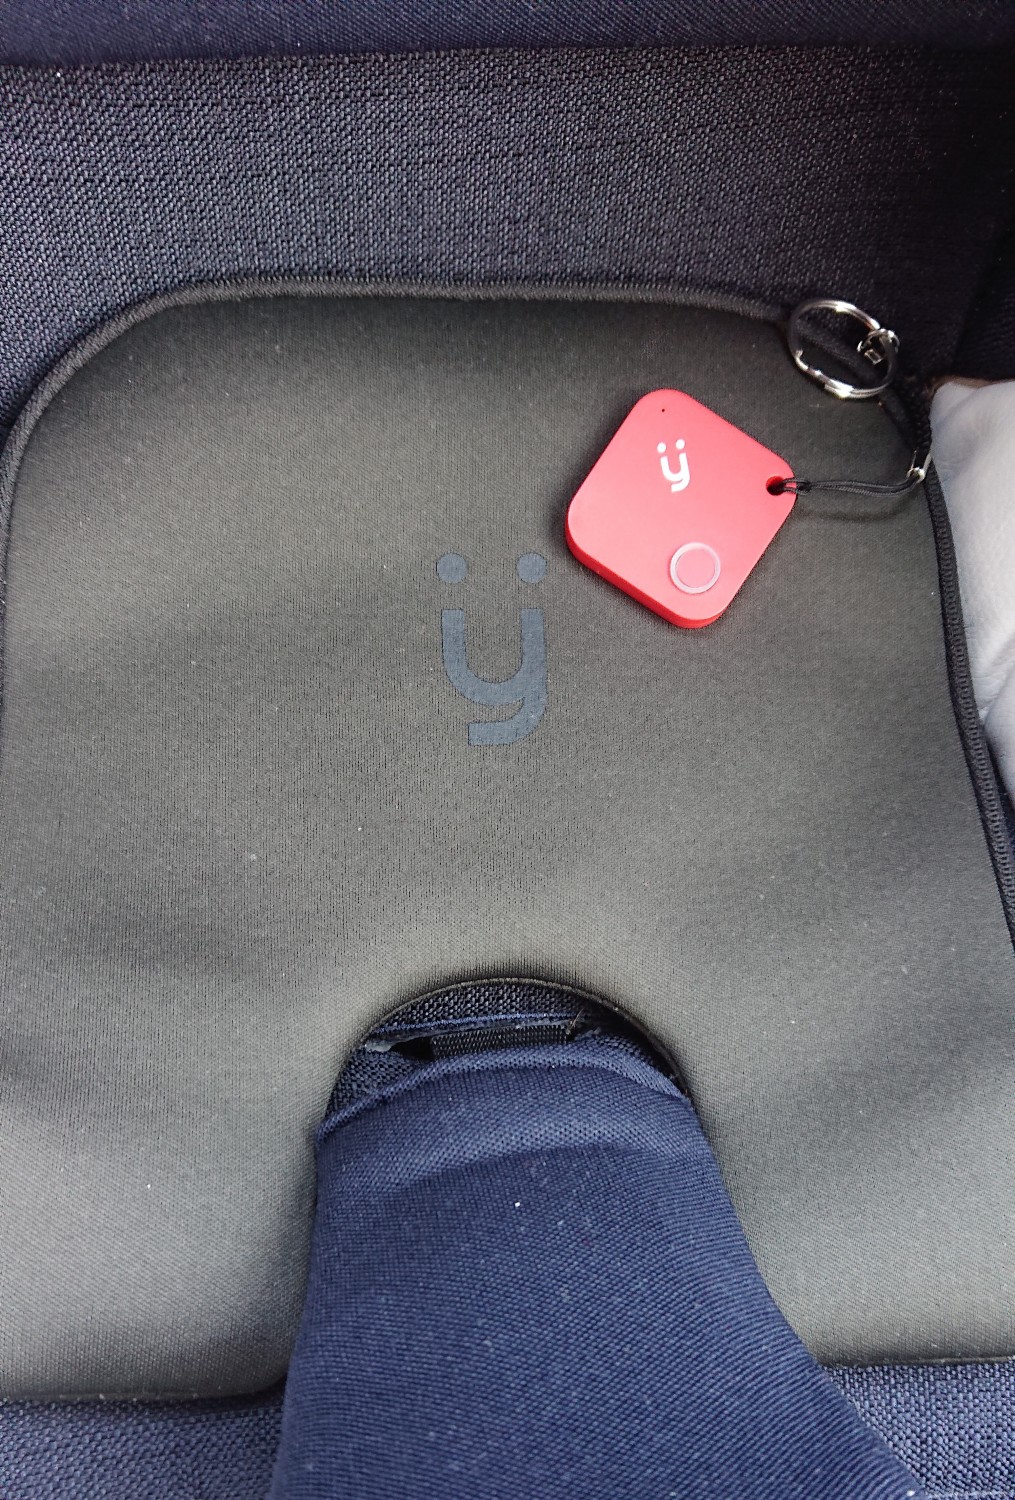 Dispositivo antiabbandono bimbi in auto Myminder MyMi con tripla sicurezza  - DIMOStore